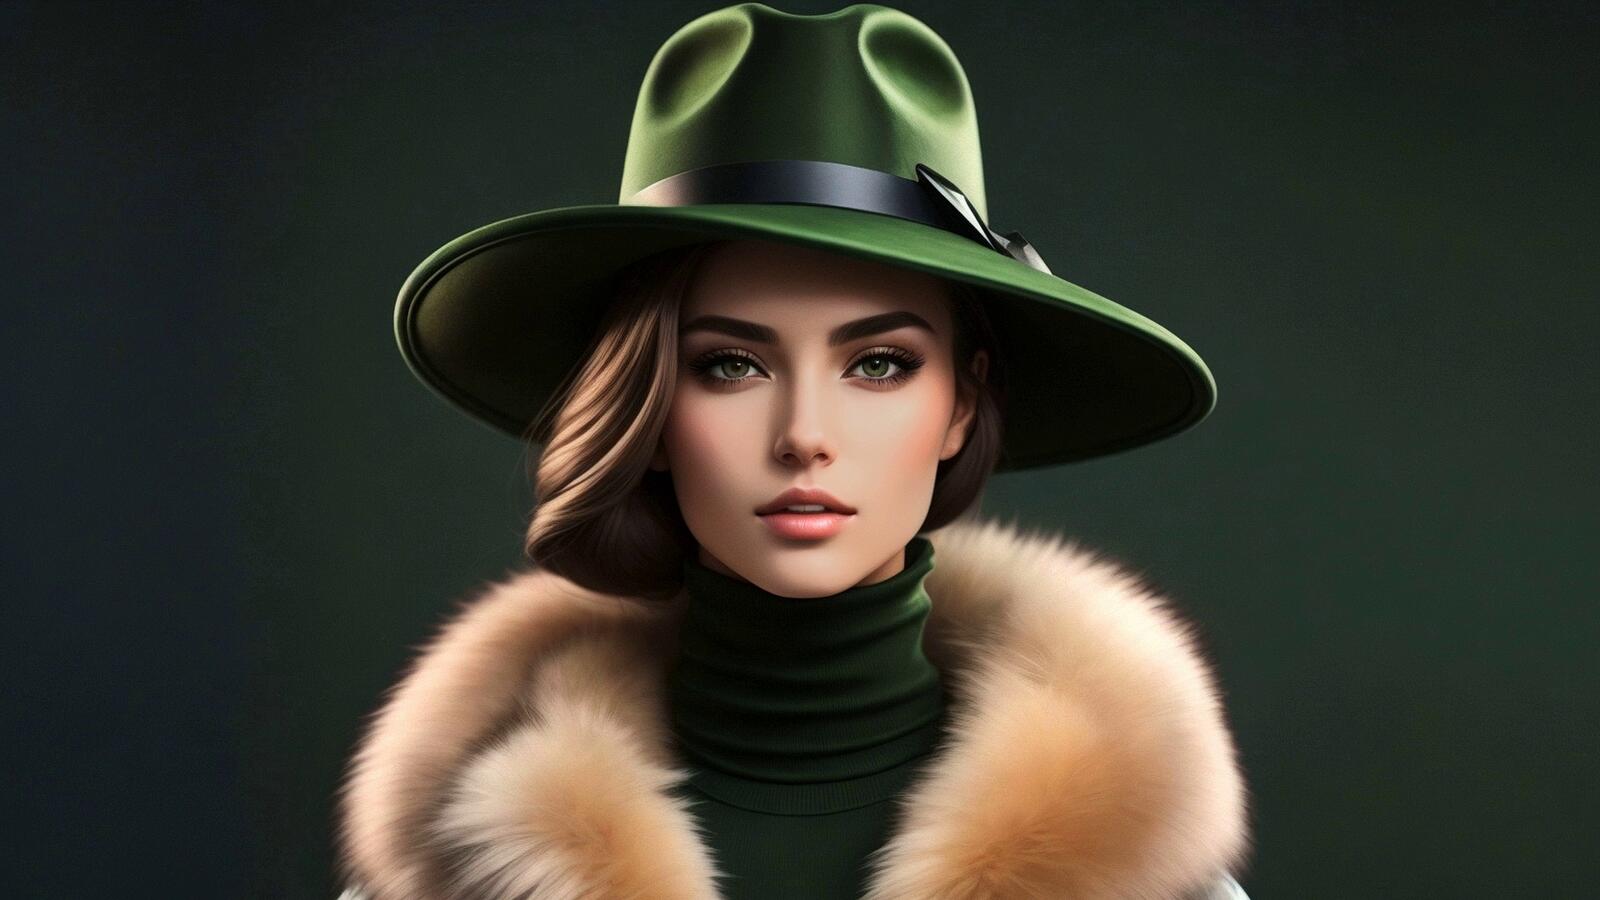 Бесплатное фото Портрет девушки в шляпе на зеленом фоне